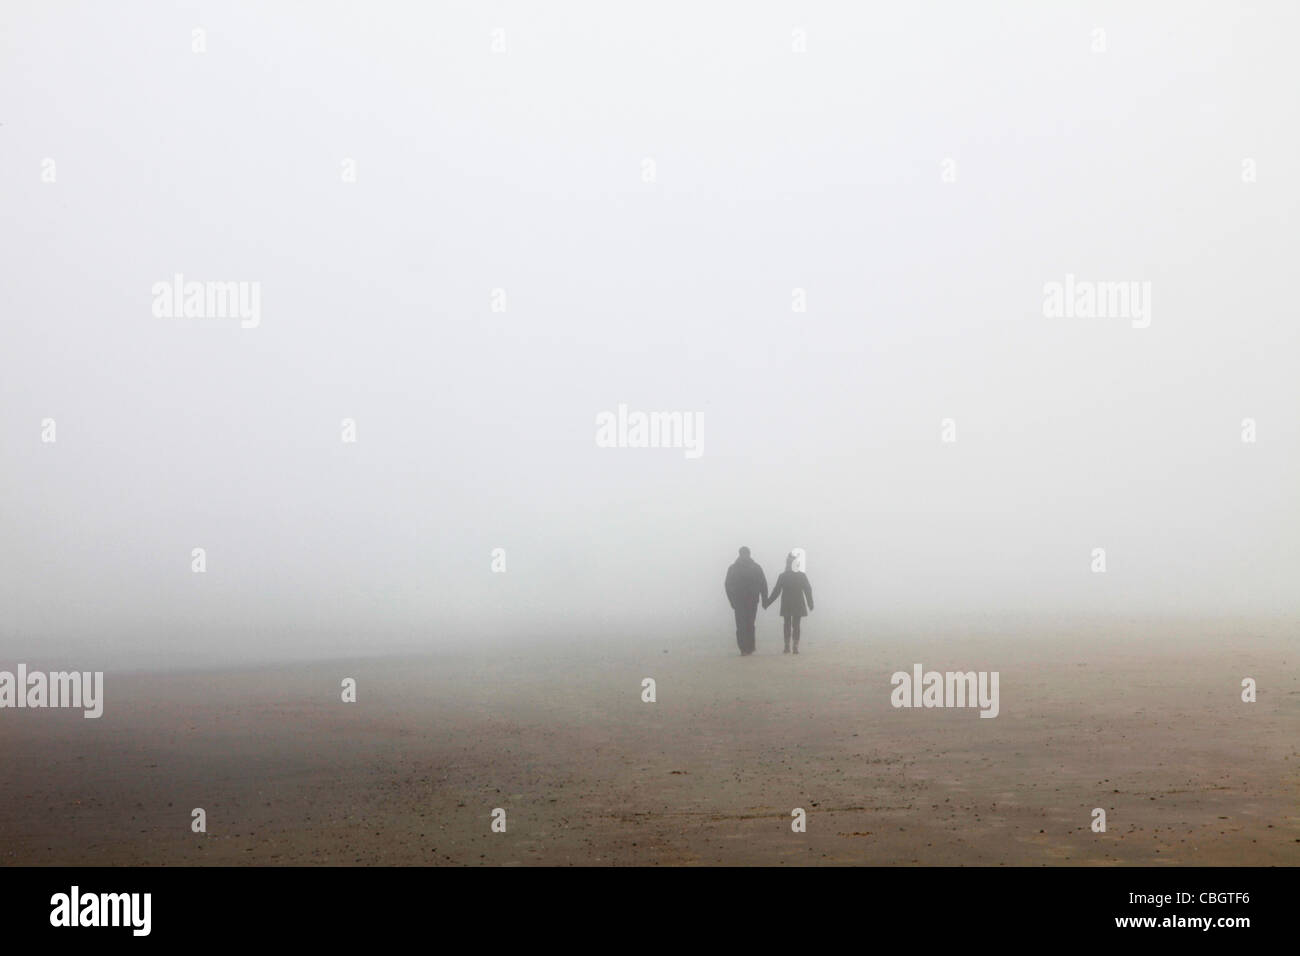 Un jour brumeux à la plage. Une faible visibilité, 2 personnes à pied dans le brouillard. Spiekeroog, Basse-Saxe, Allemagne, Europe. Banque D'Images